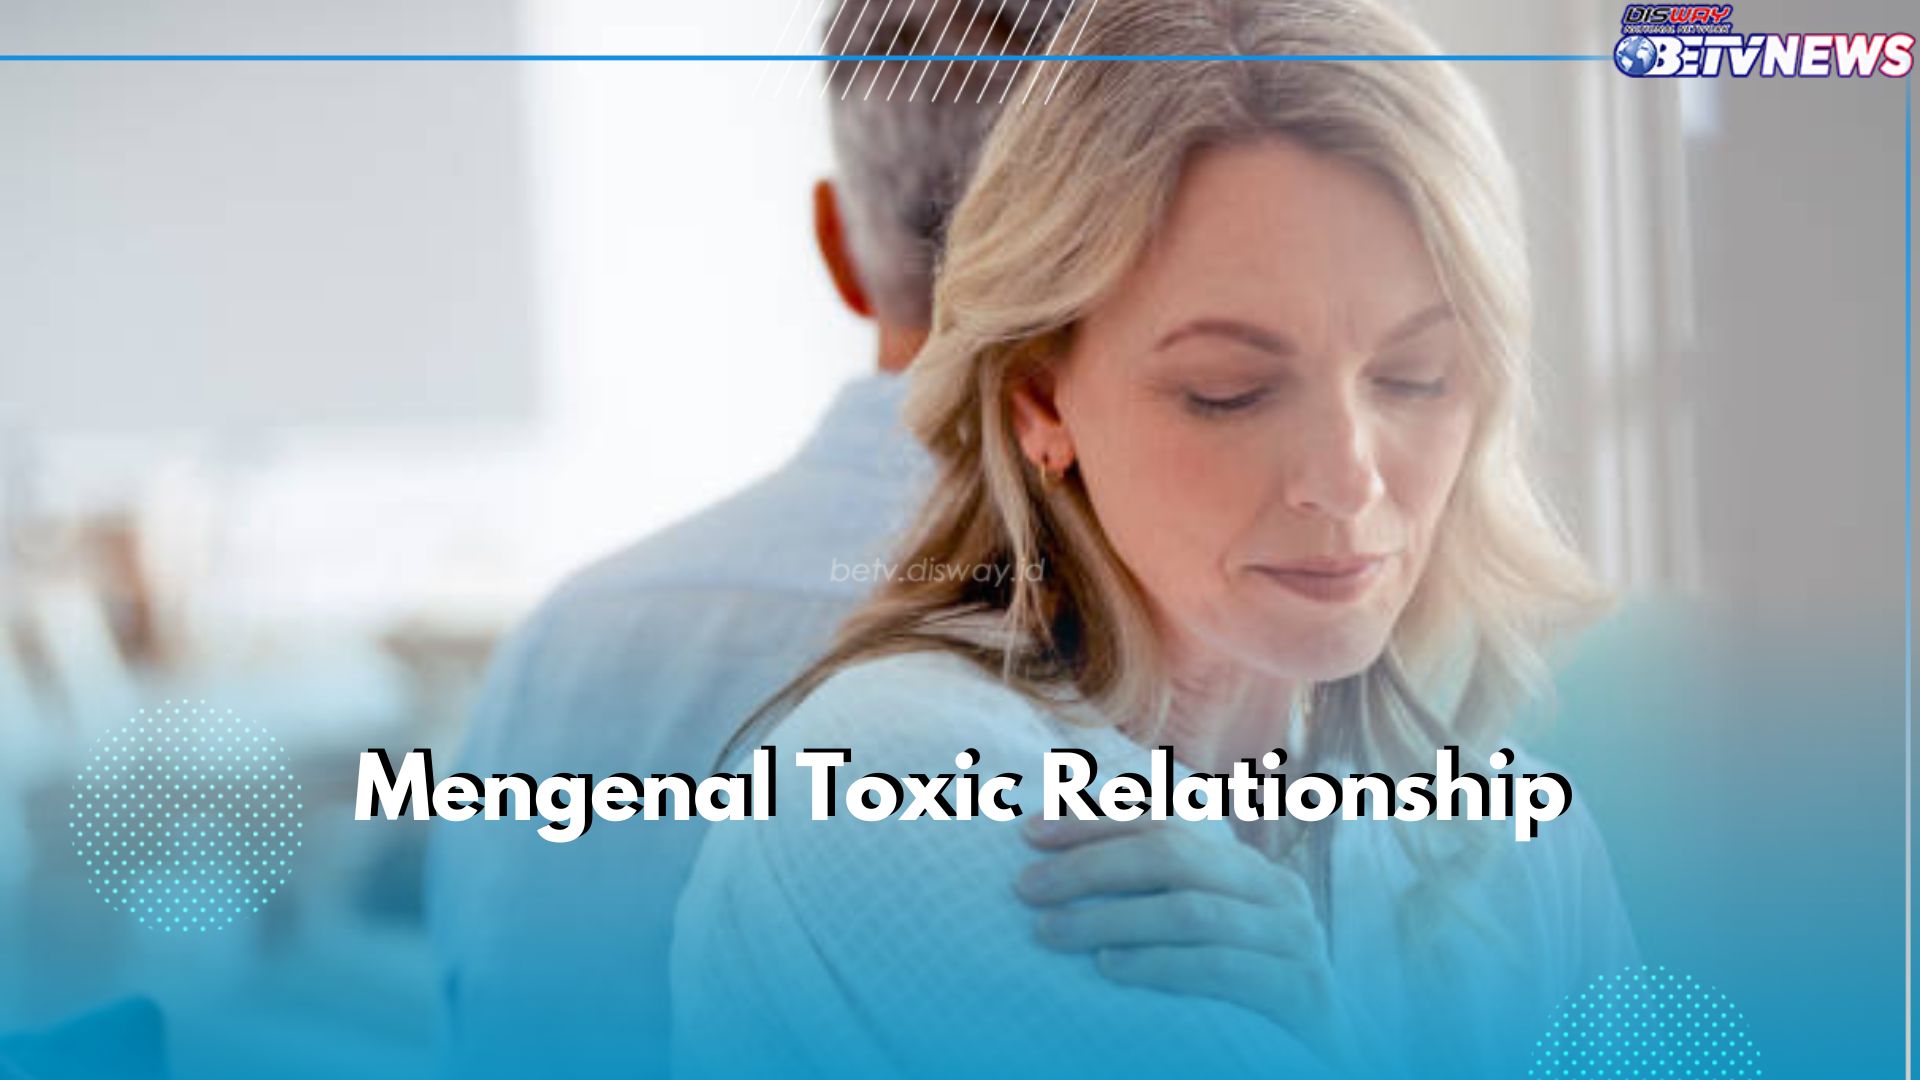 Kenali Istilah Toxic Relationship dan Efeknya Pada Hubungan, Pernah Alami?